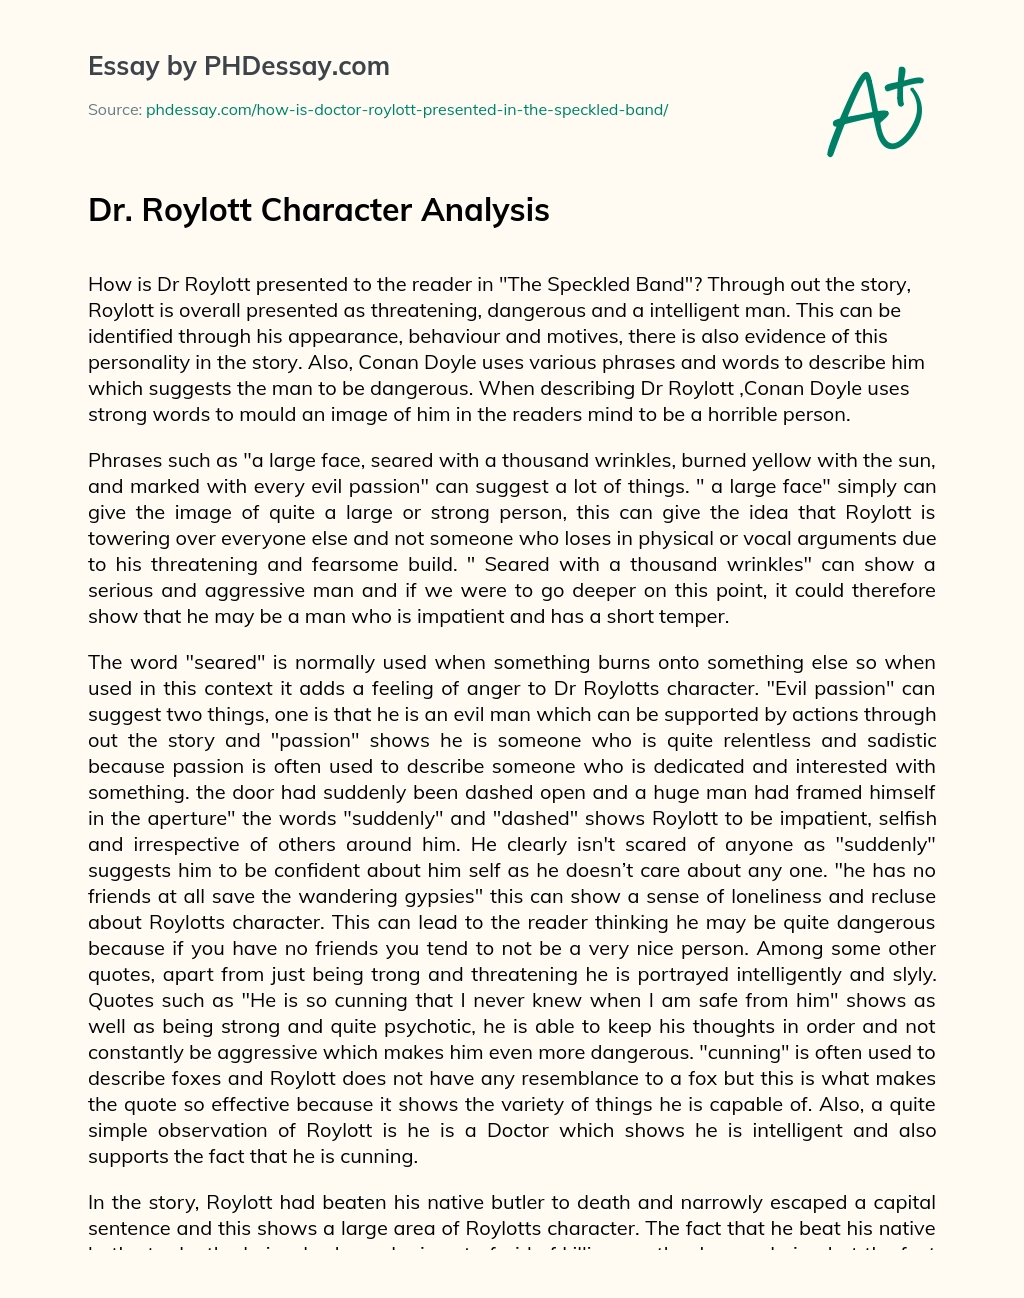 Dr. Roylott Character Analysis essay